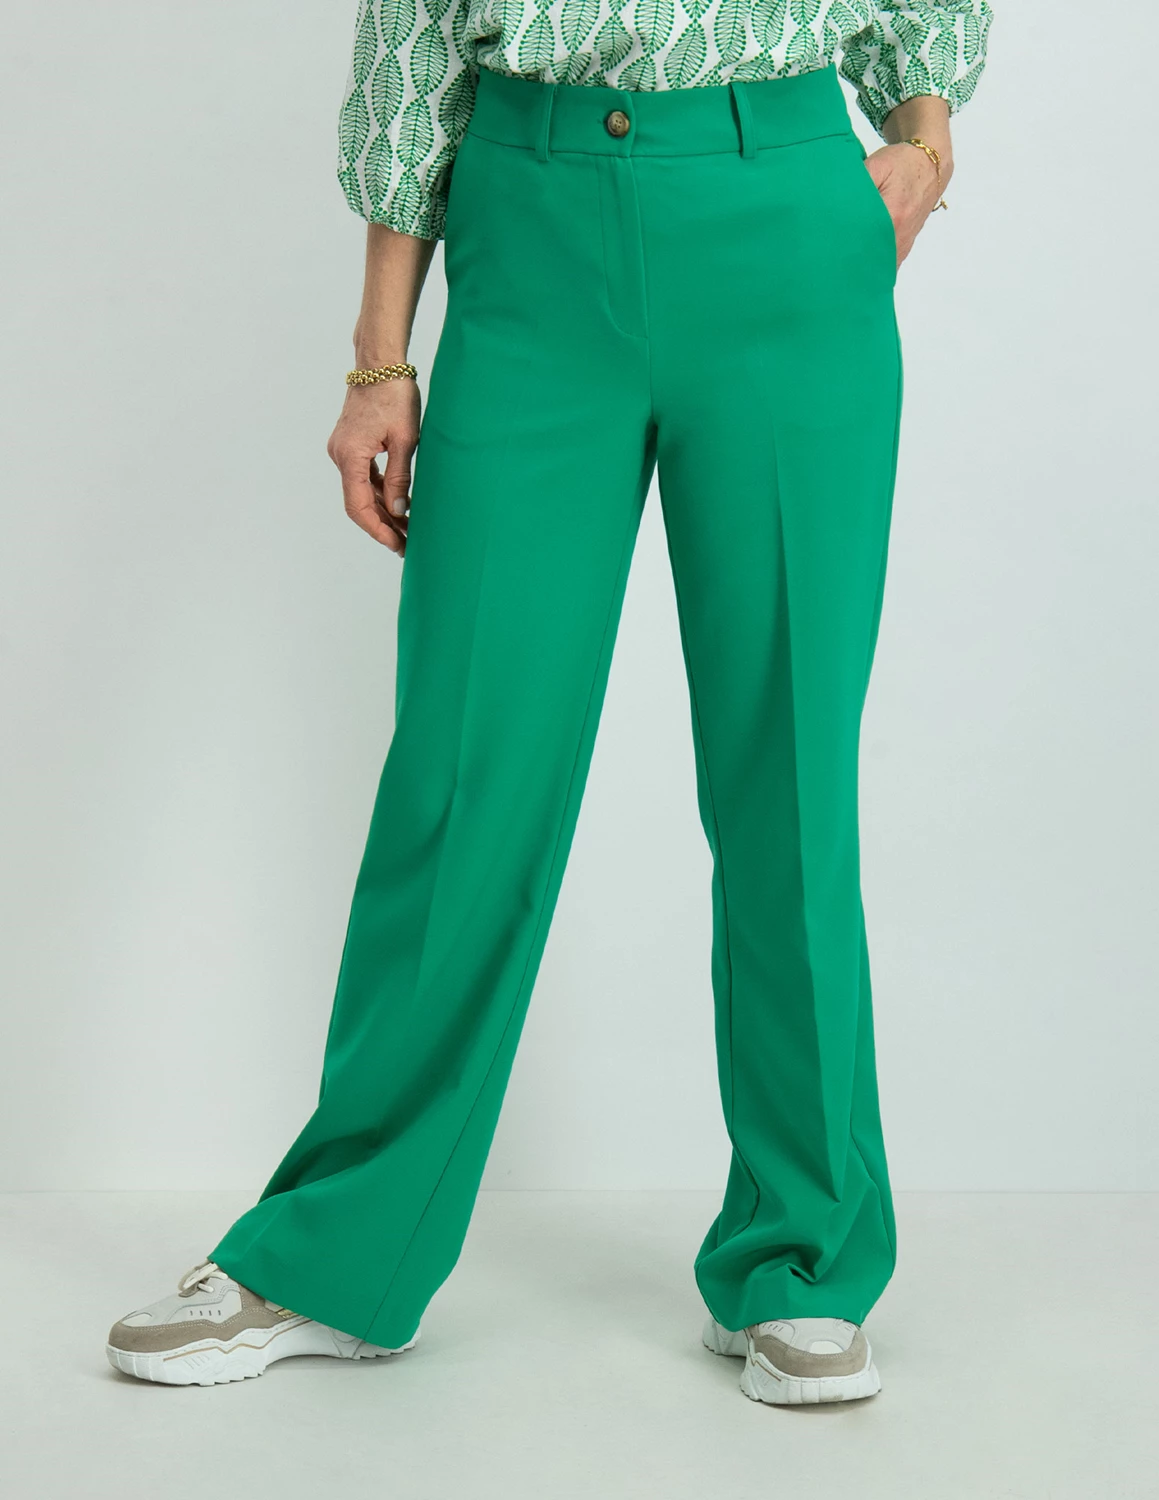 Geisha Pantalon solid 31125-32 groen kopen bij The